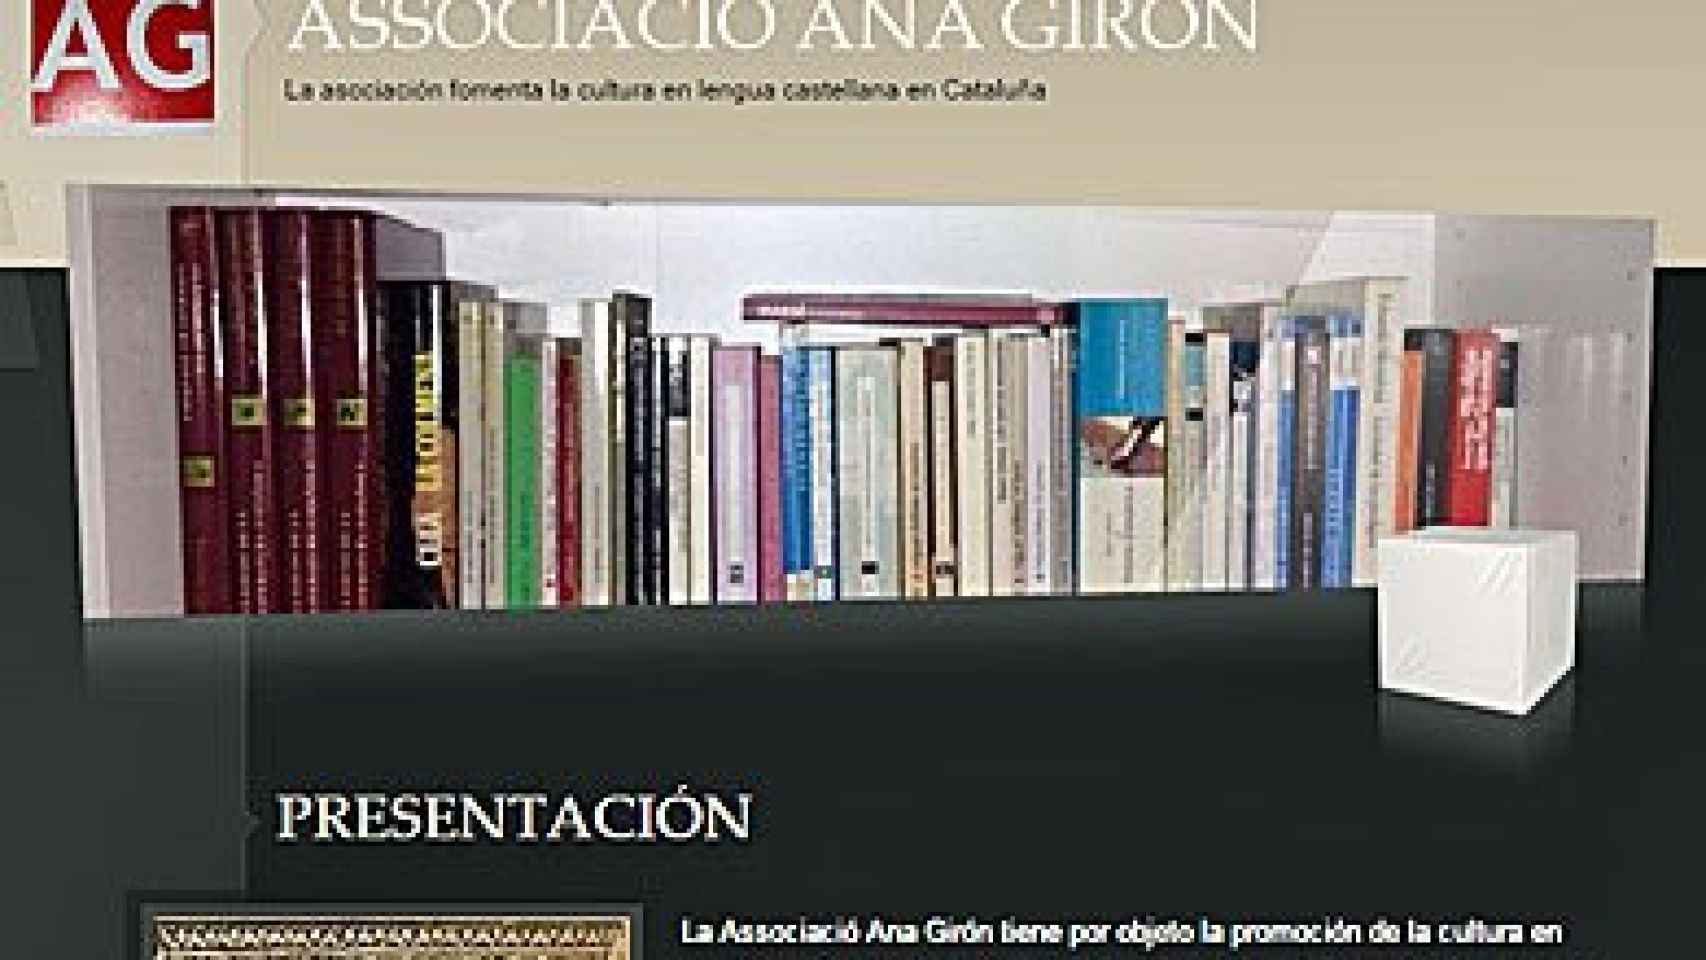 Web de la Associació Ana Girón